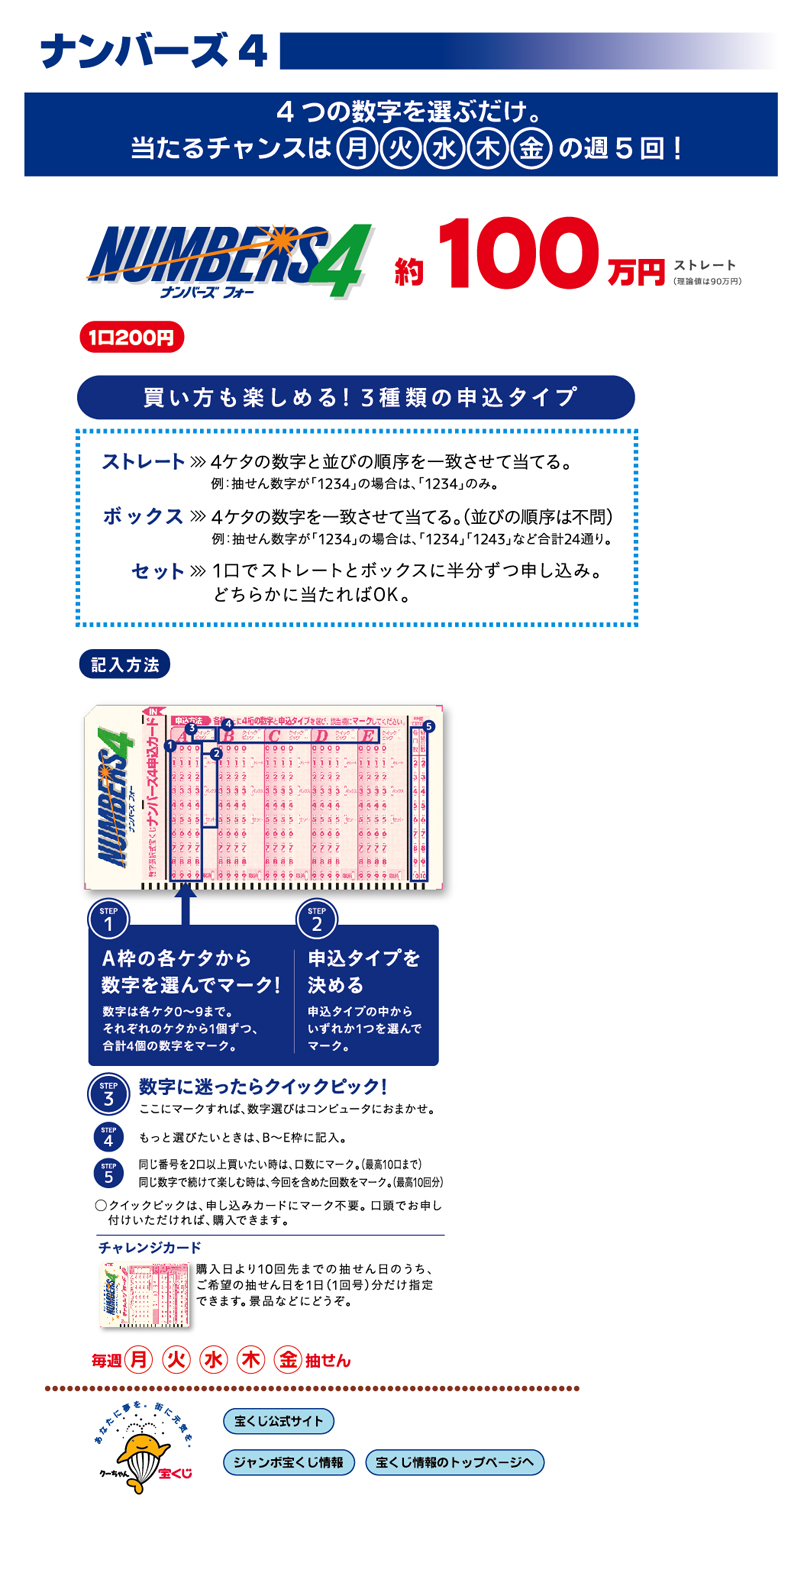 只选择4个号码。 中奖的机会是月火水木金每周5次! 直球大约100万日元的购买方法是3种1口200日元